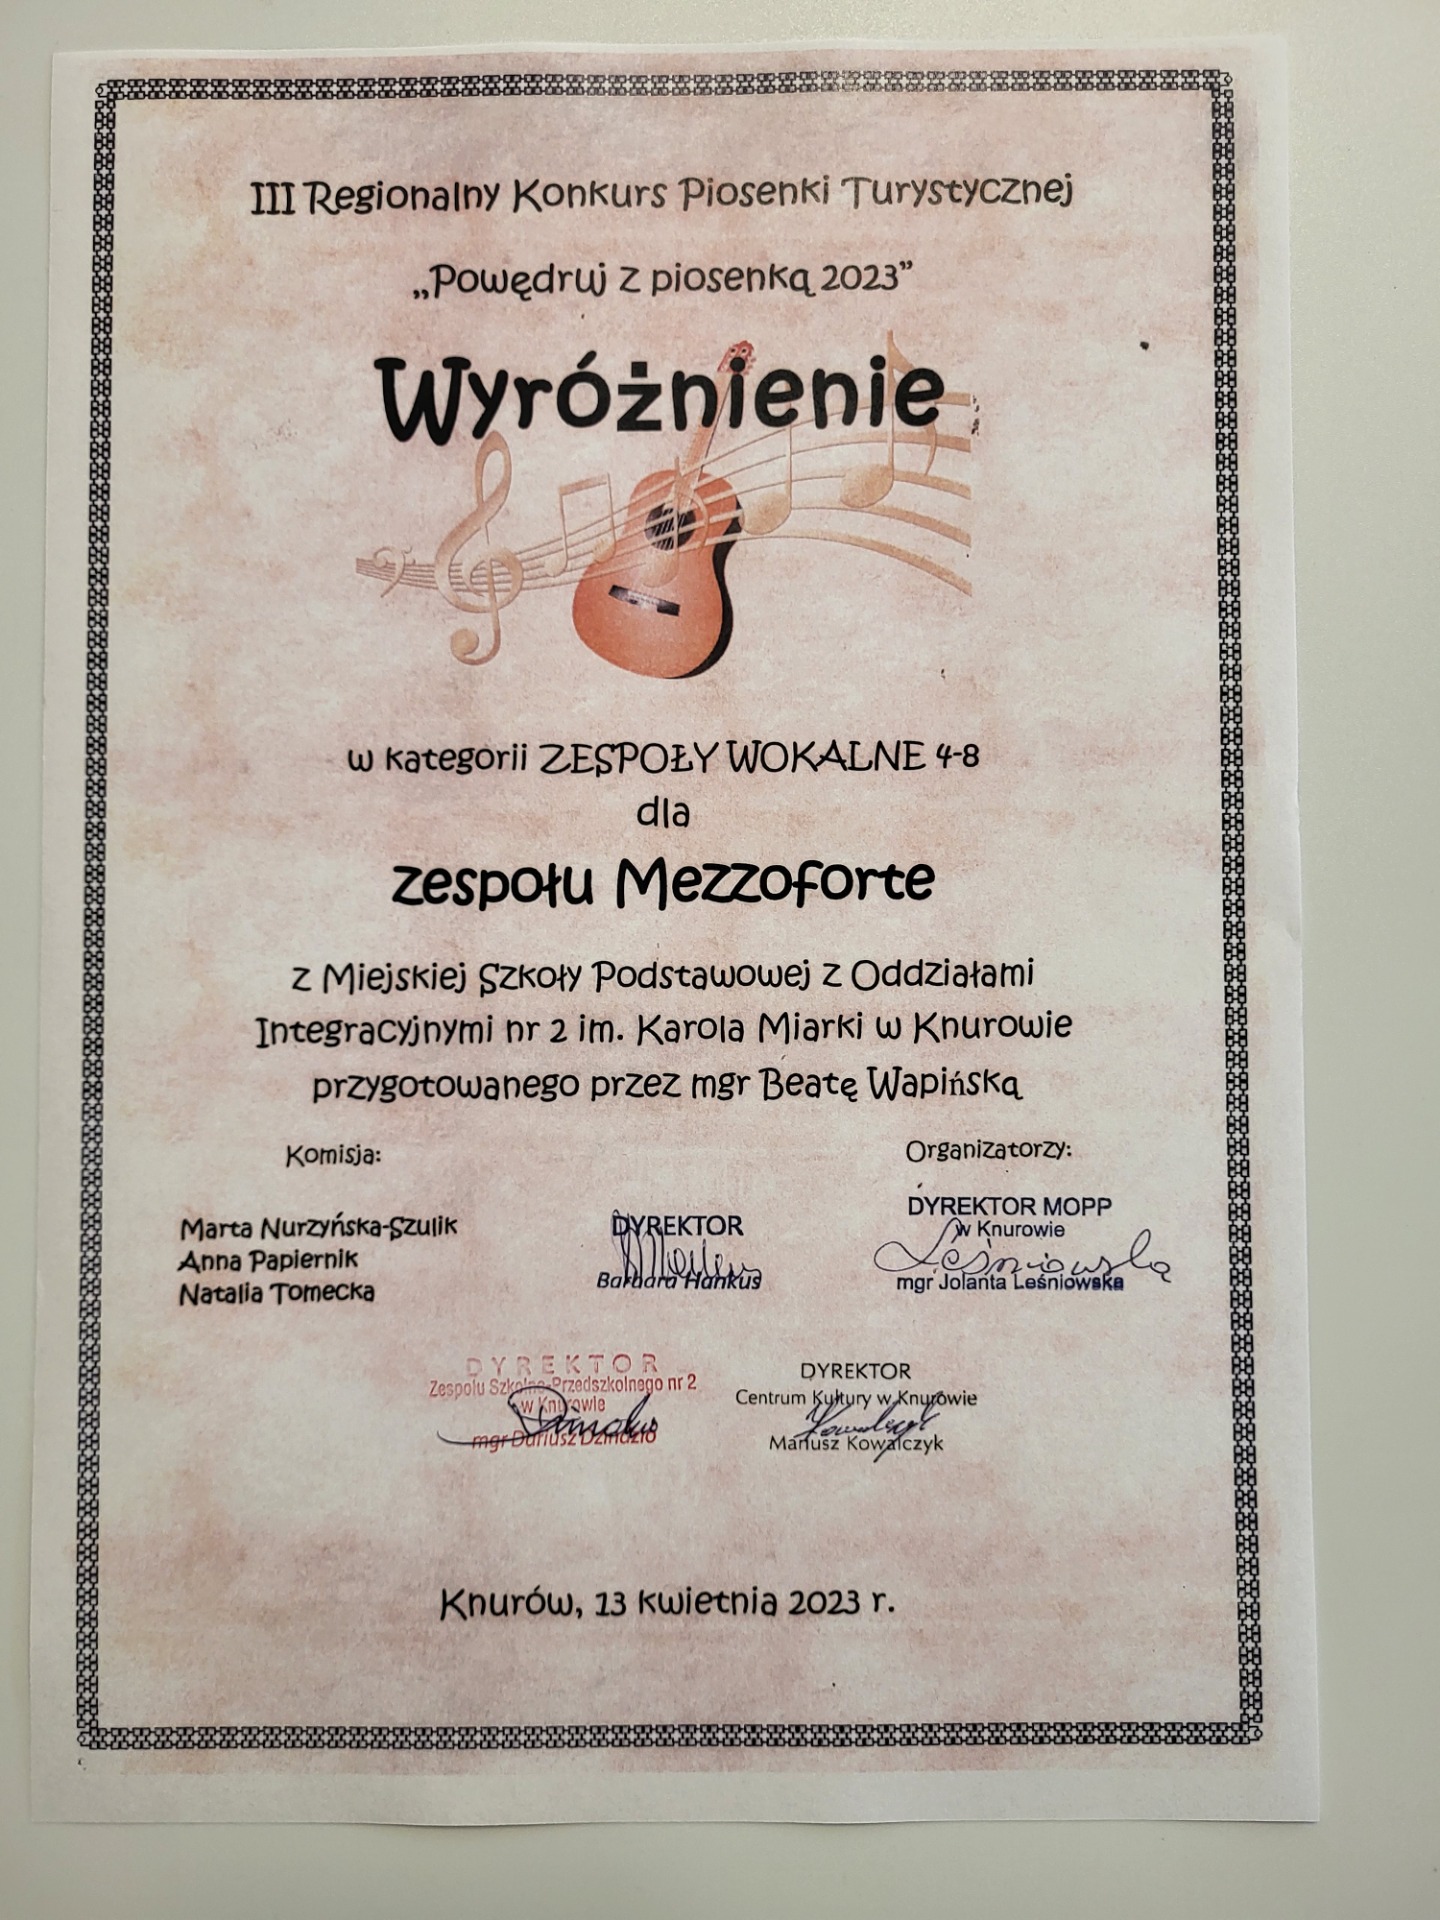 Dyplom - Wyróżnienie dla chóru "Mezzoforte"" na III Regionalnym Konkursie Piosenki Turystycznej "Powędruj z piosenką 2023"
